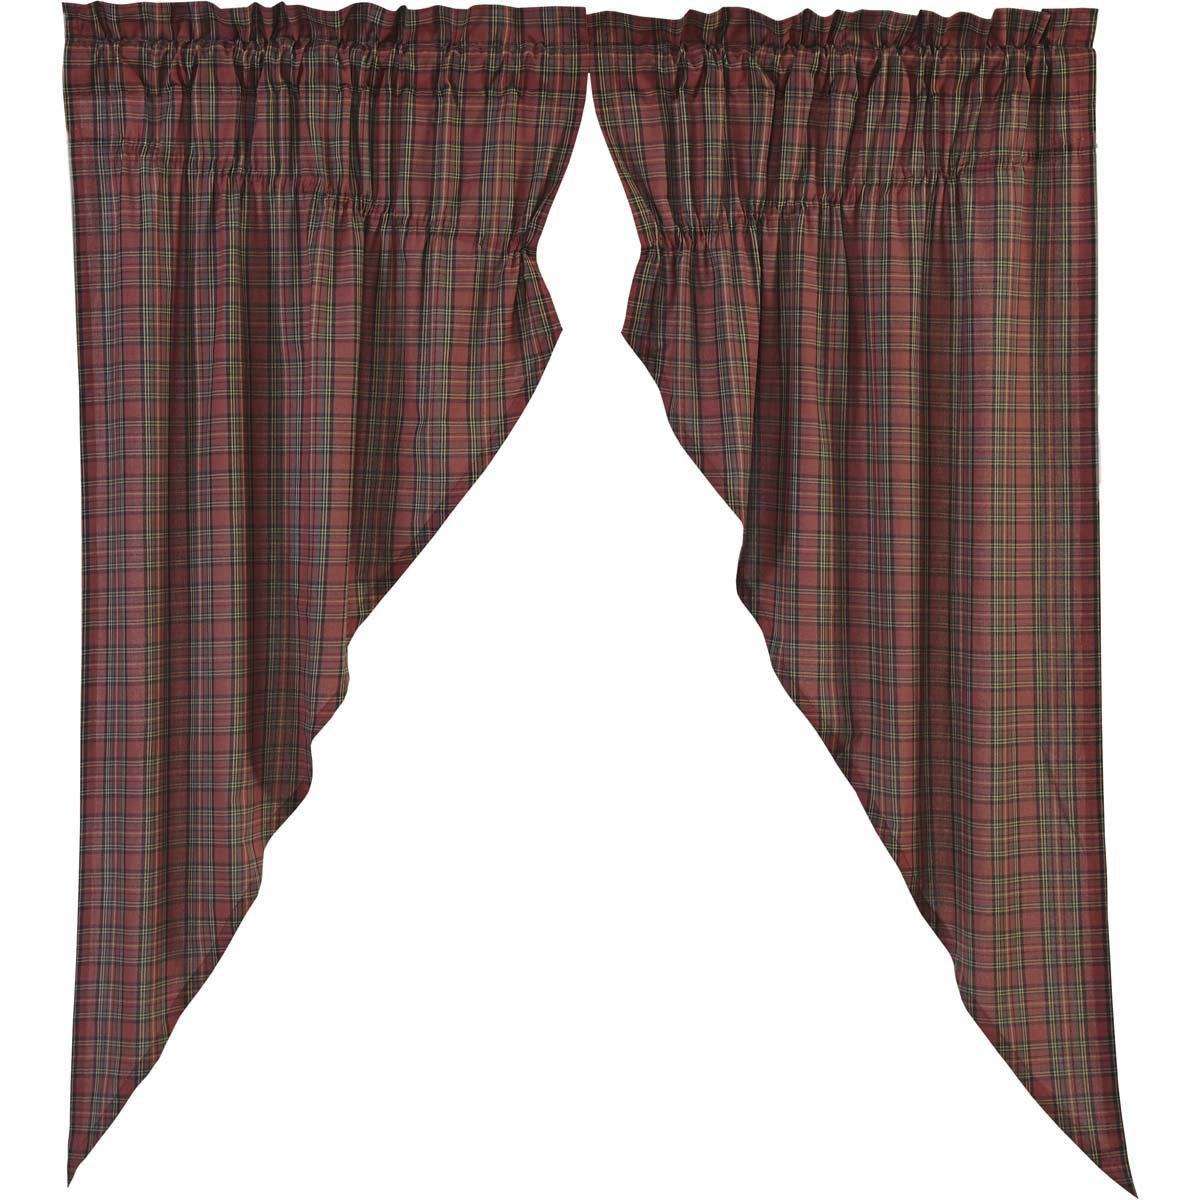 Tartan Red Plaid Prairie Short Panel Curtain Set of 2 - The Fox Decor